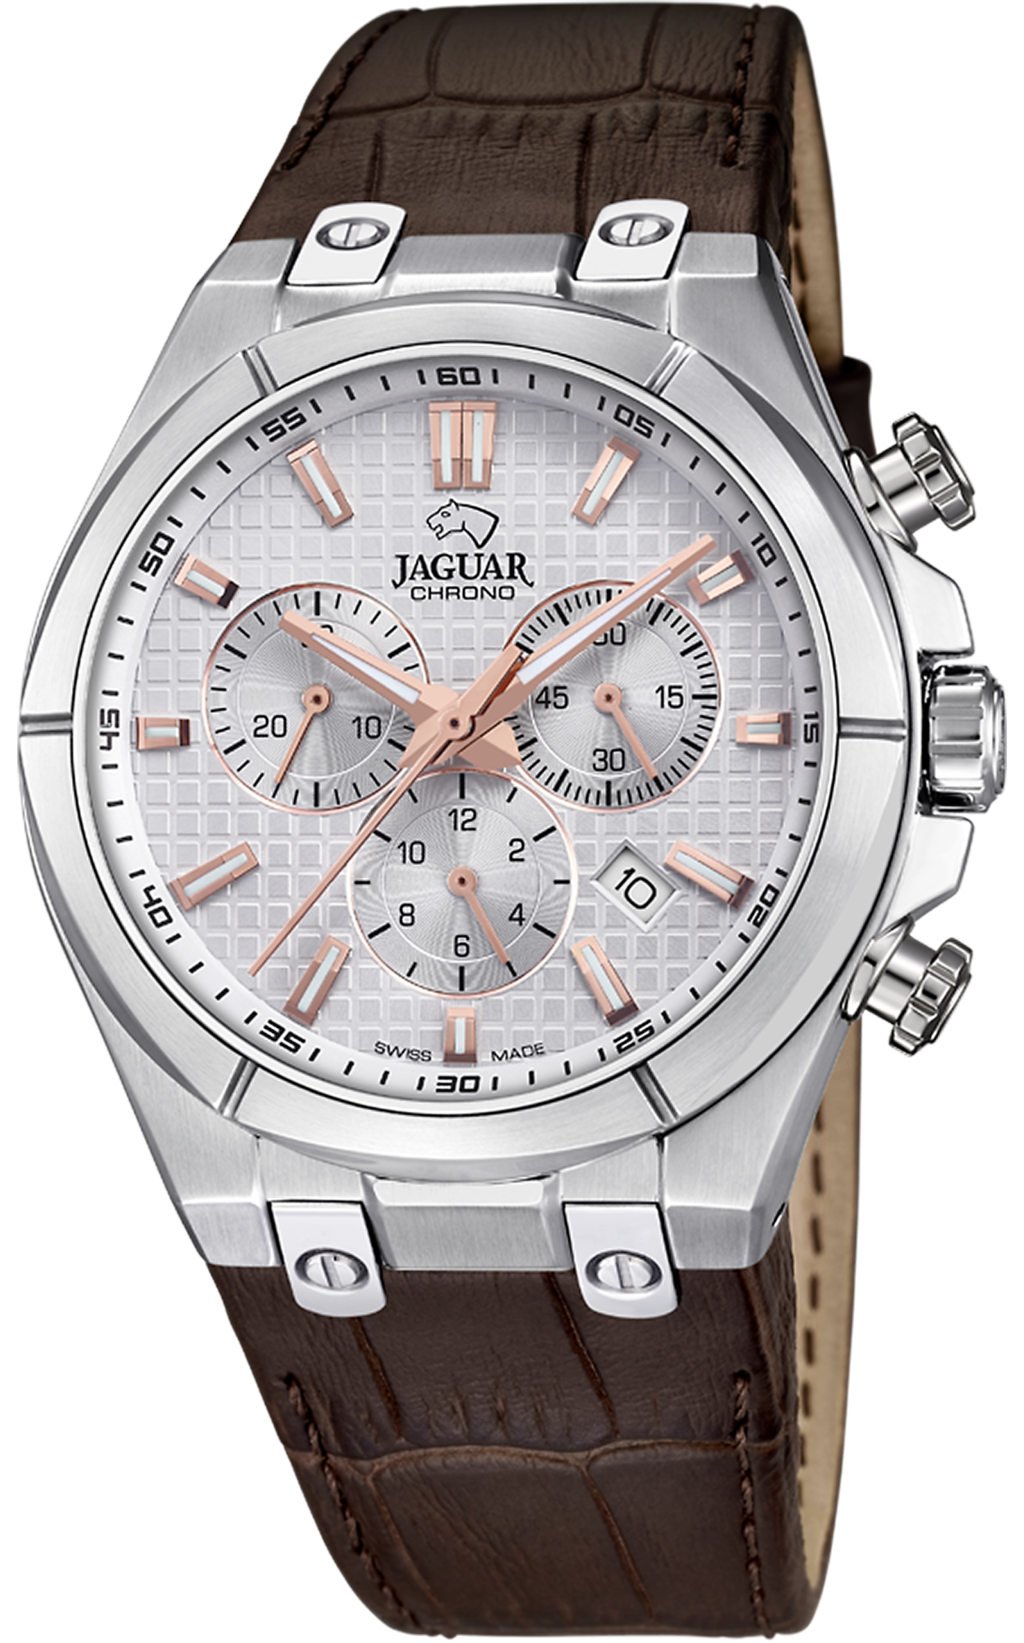 STATUS - Jaguar часов ACAMAR J696/1 швейцарских Магазины